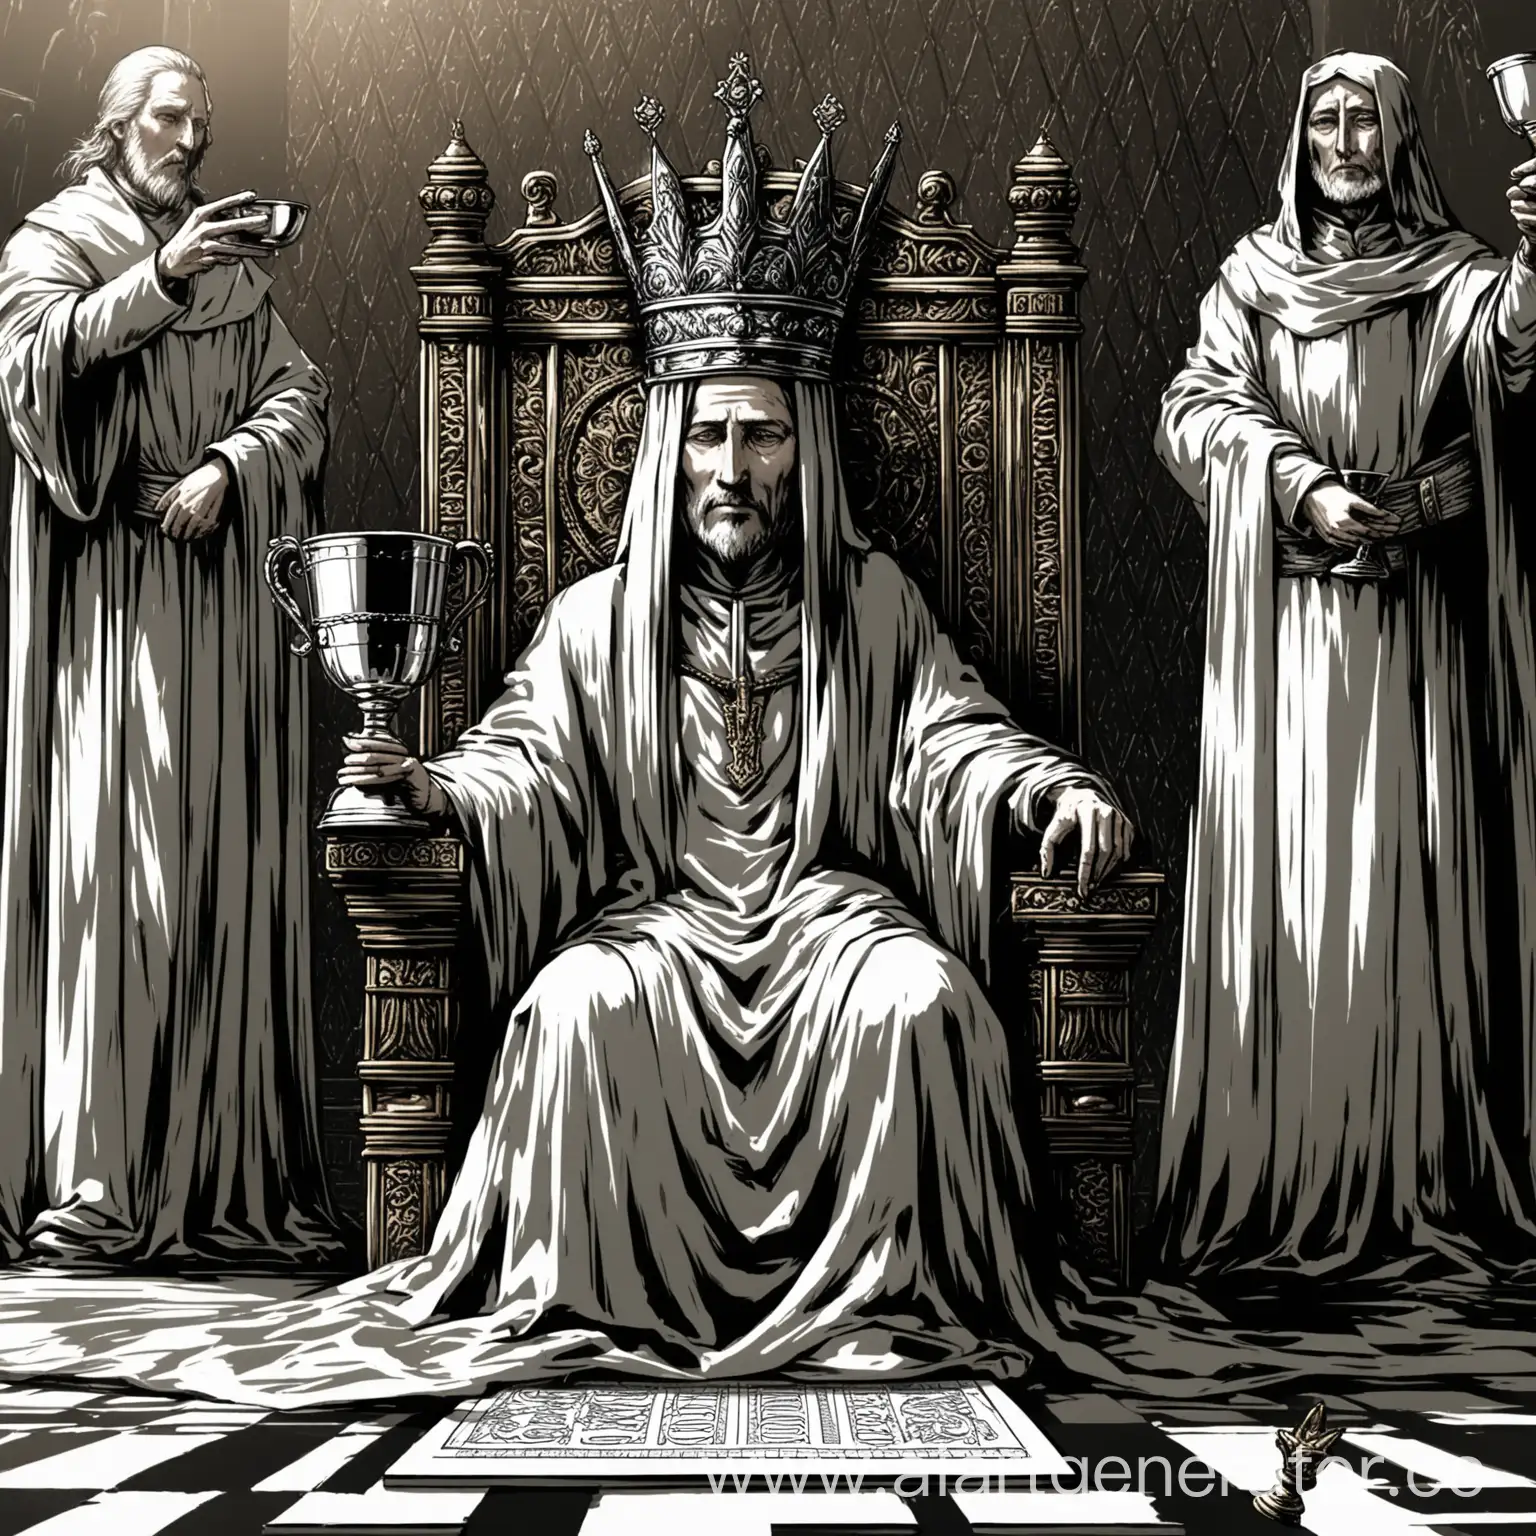 человек стоит на коленях перед сидящим на троне правителем, дарит серебряный кубок, лицо правителя скрыто